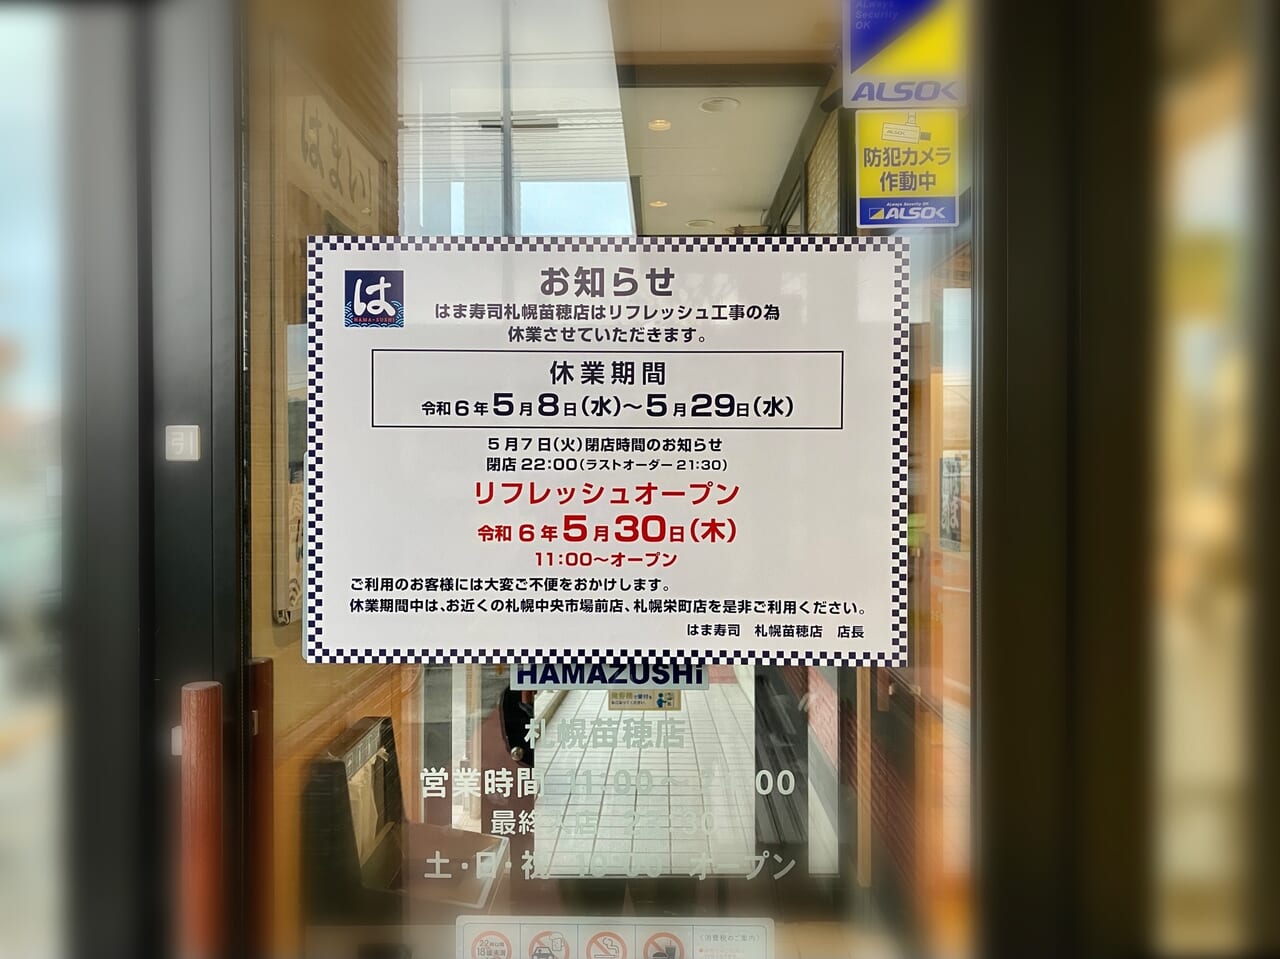 「はま寿司 札幌苗穂店」店頭に「お知らせ」がありました。気になる内容は。